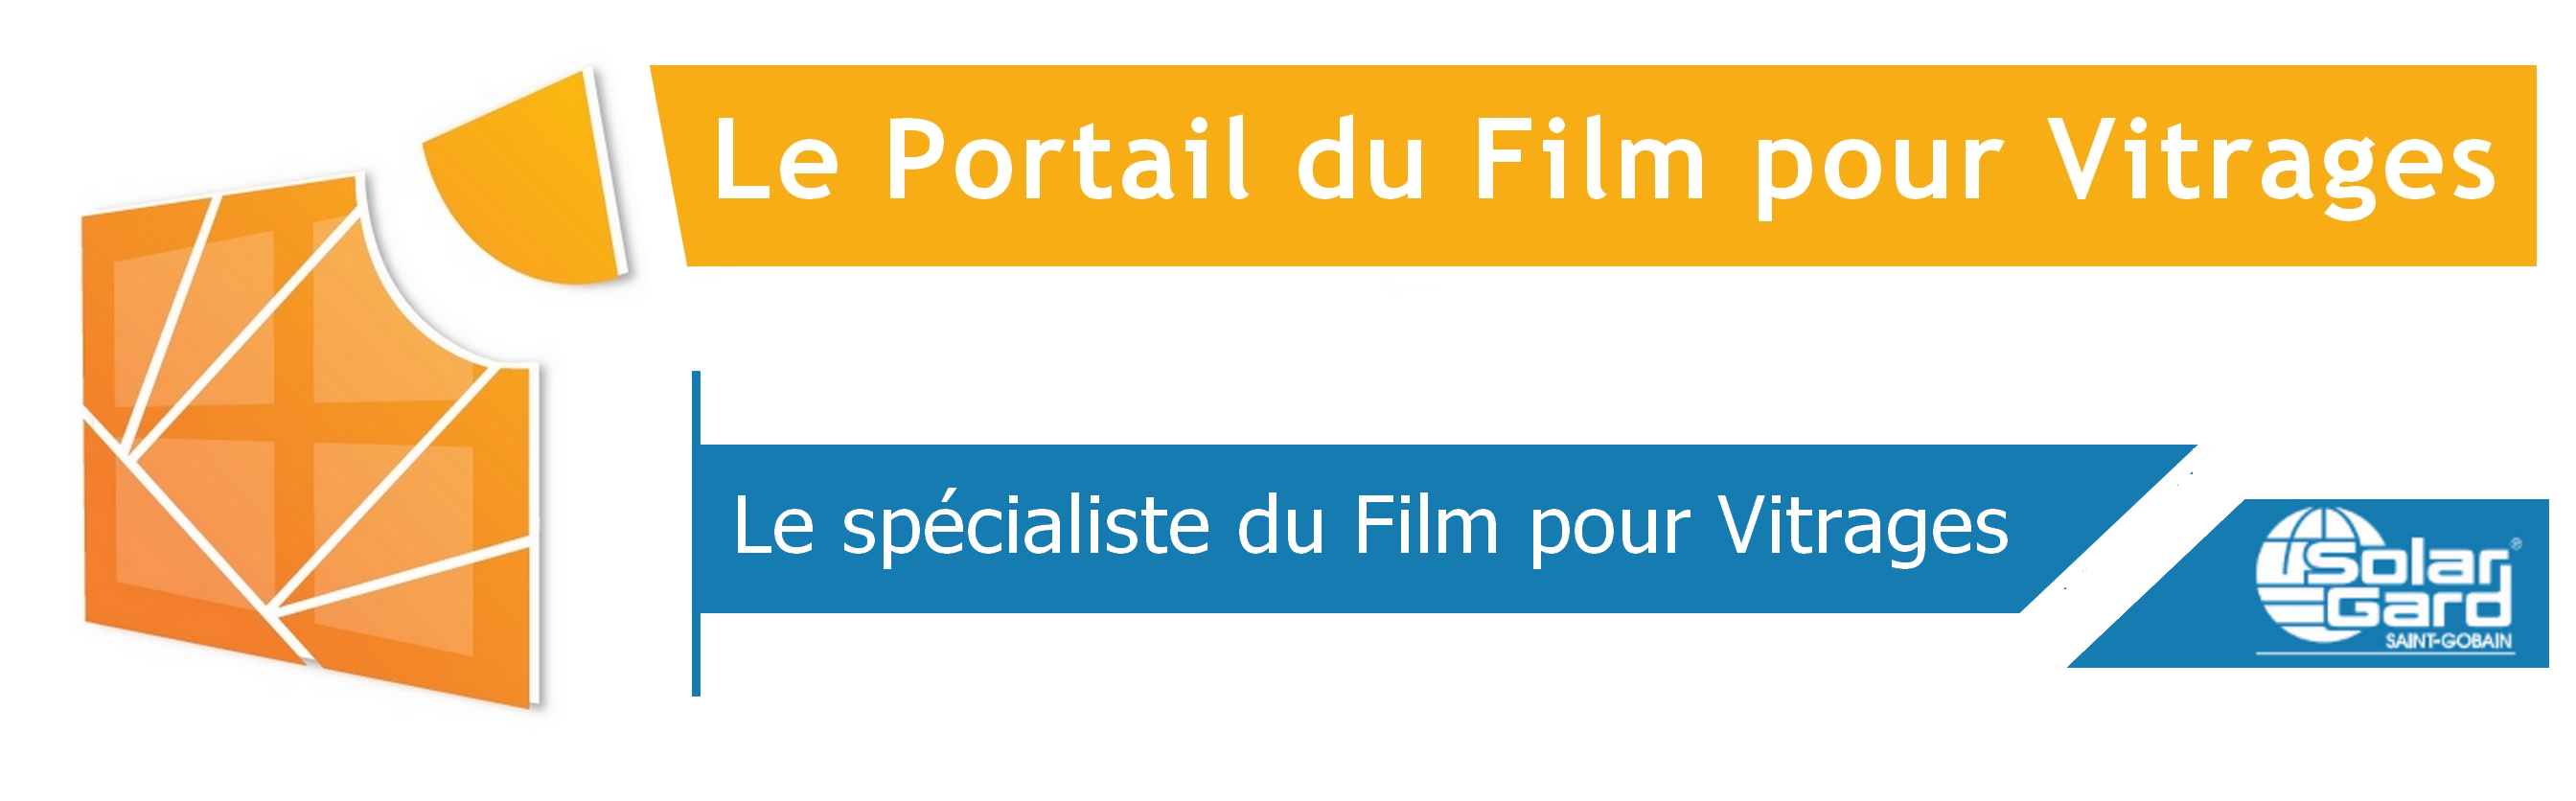 ITD Le Portail du Film pour Vitrages | Distributeur SolarGard Saint-Gobain